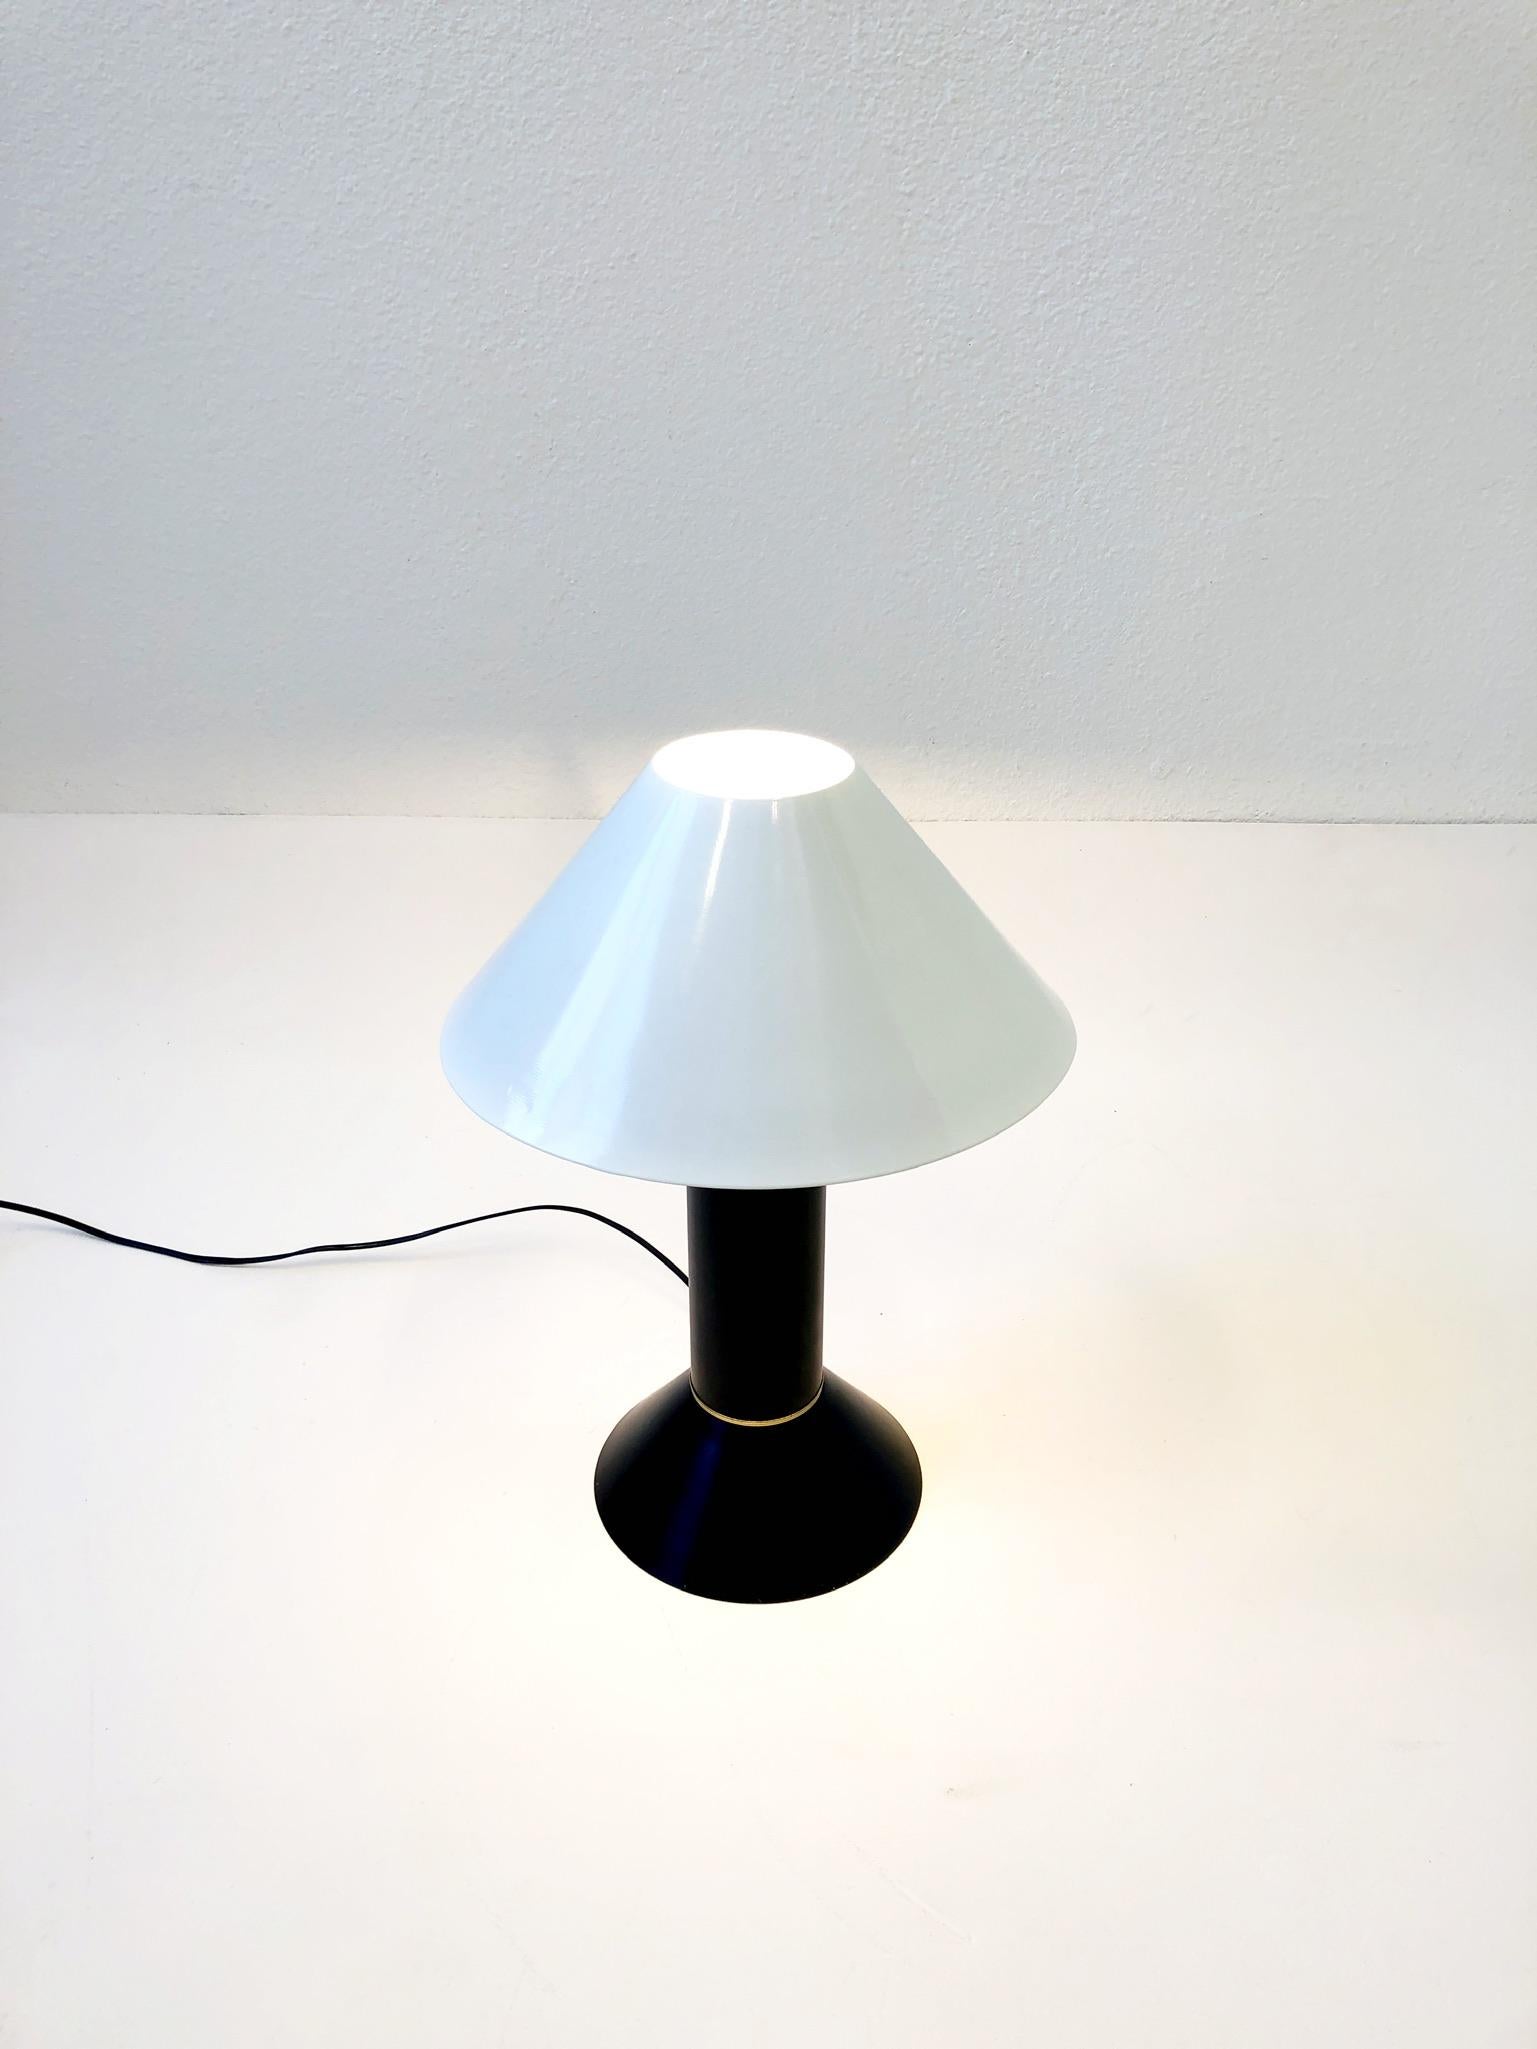 ron rezek table lamp